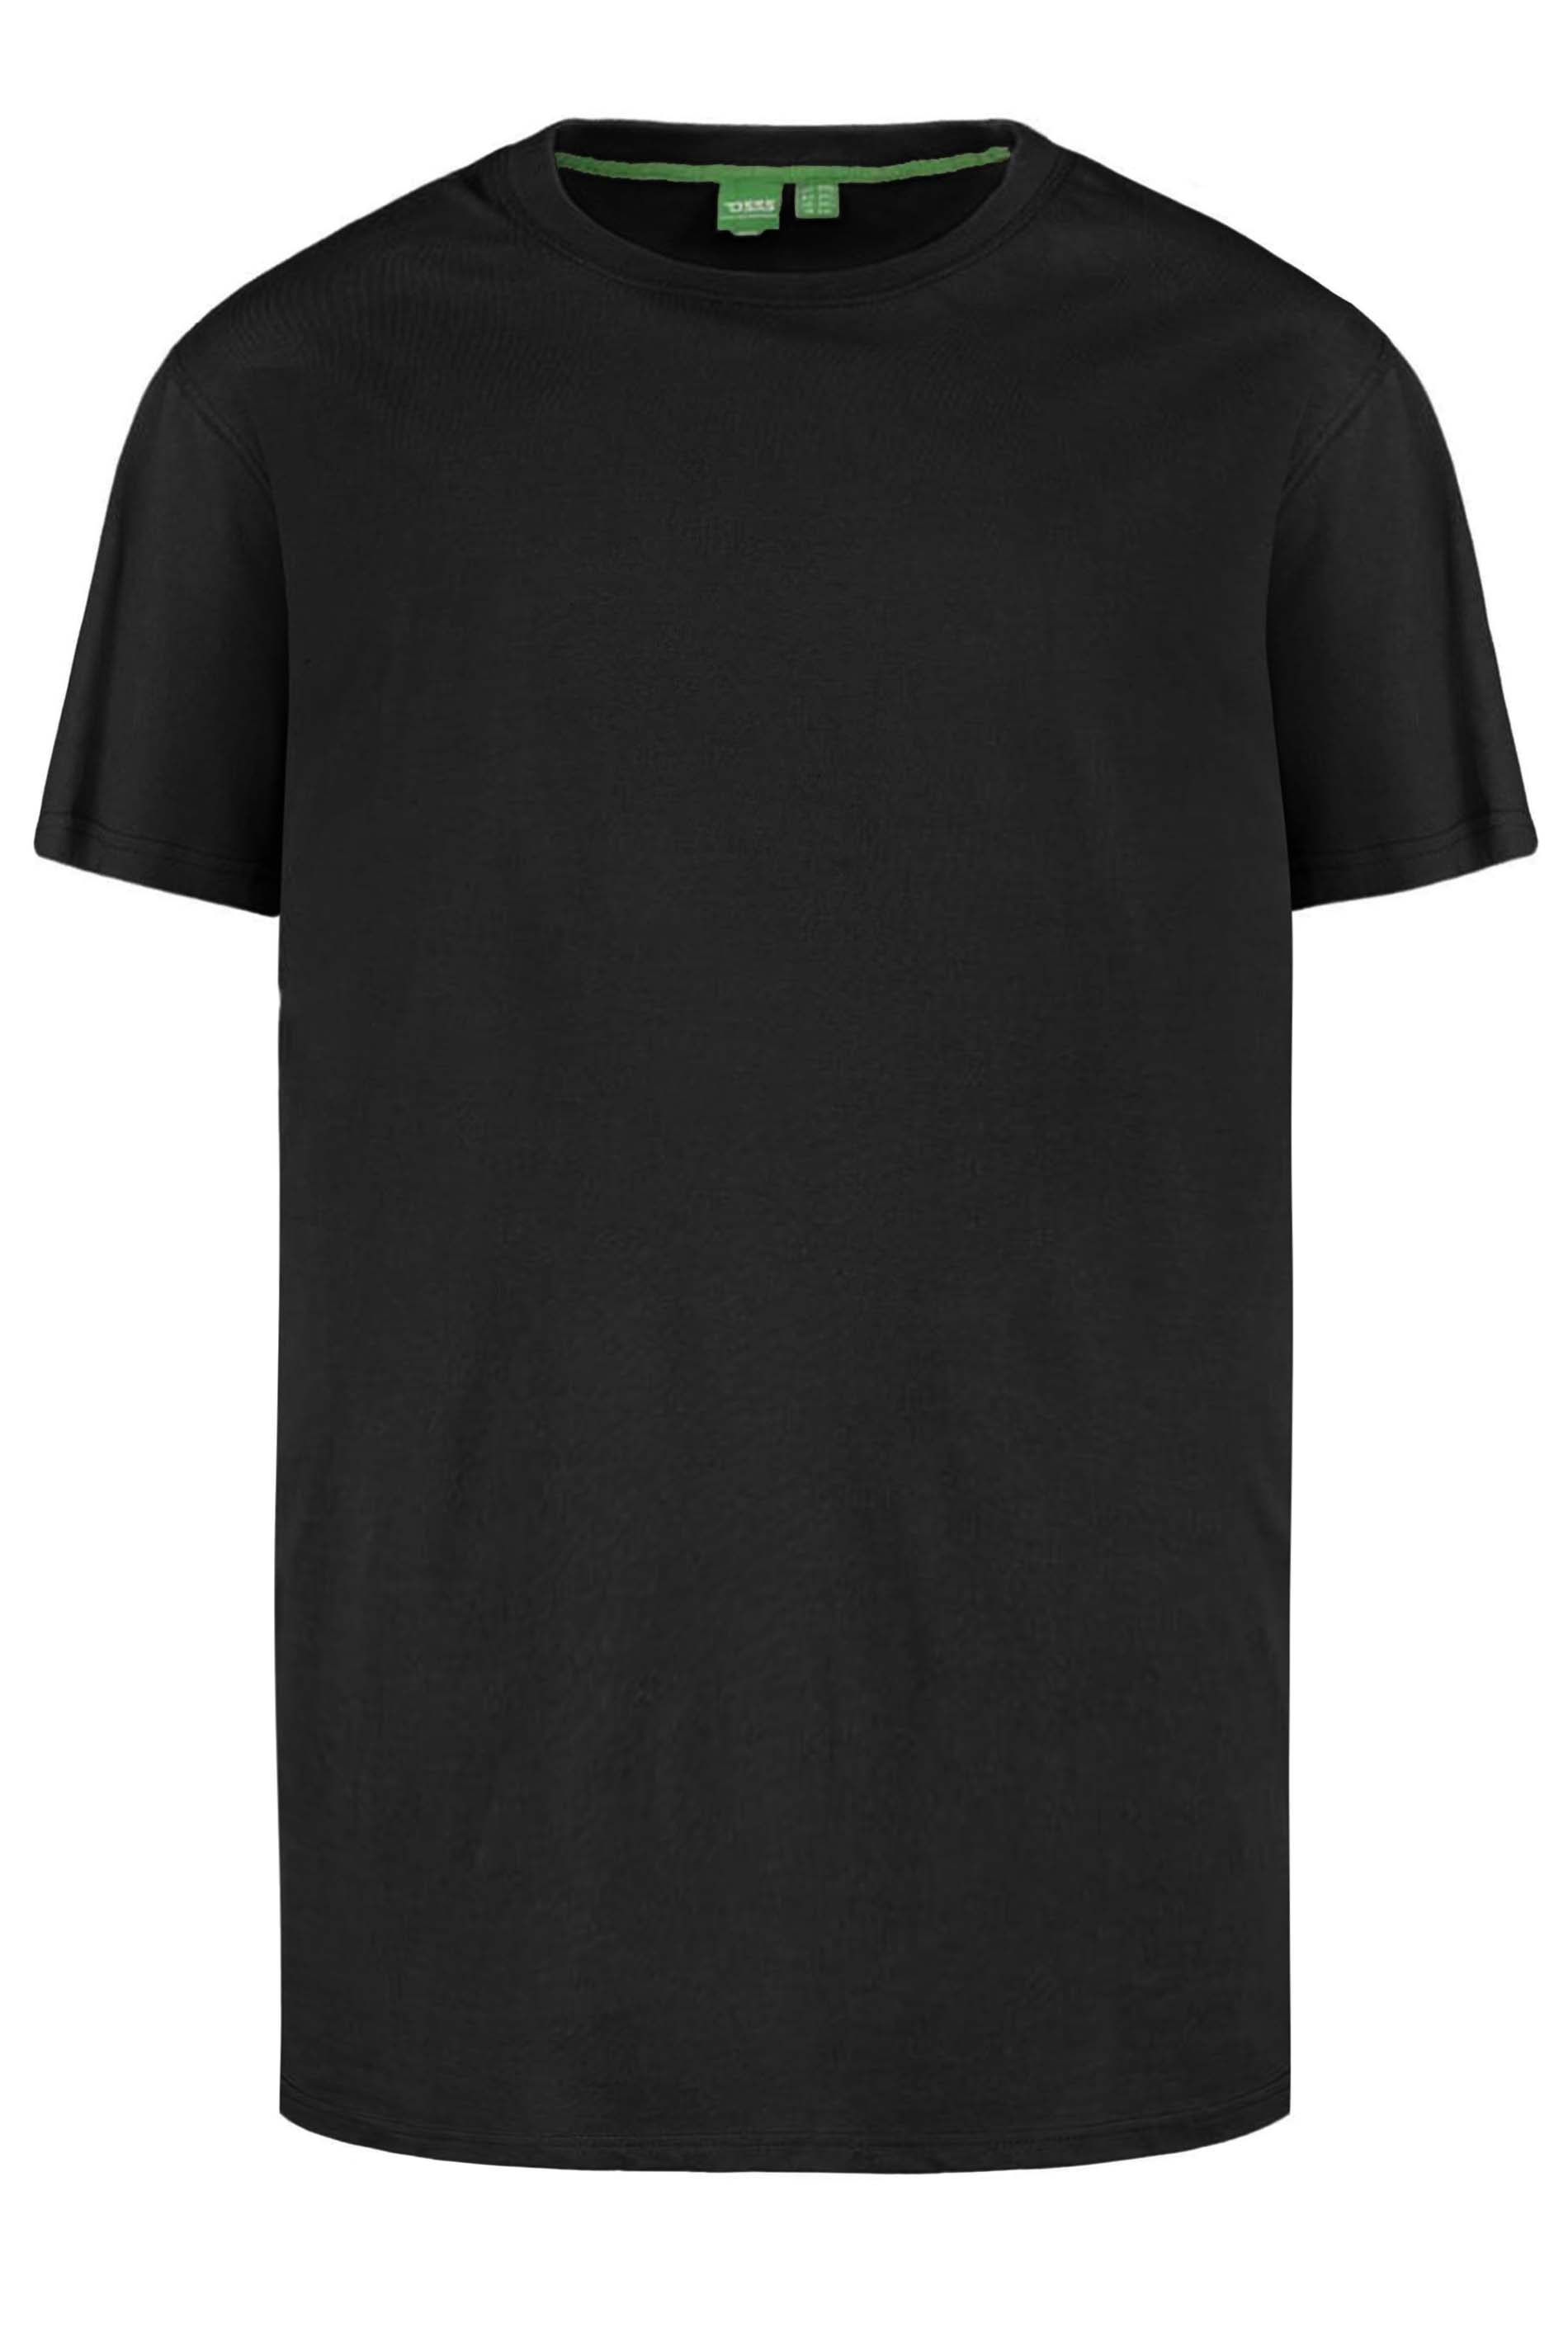 D555 Black Duke Basic T-Shirt | BadRhino 2